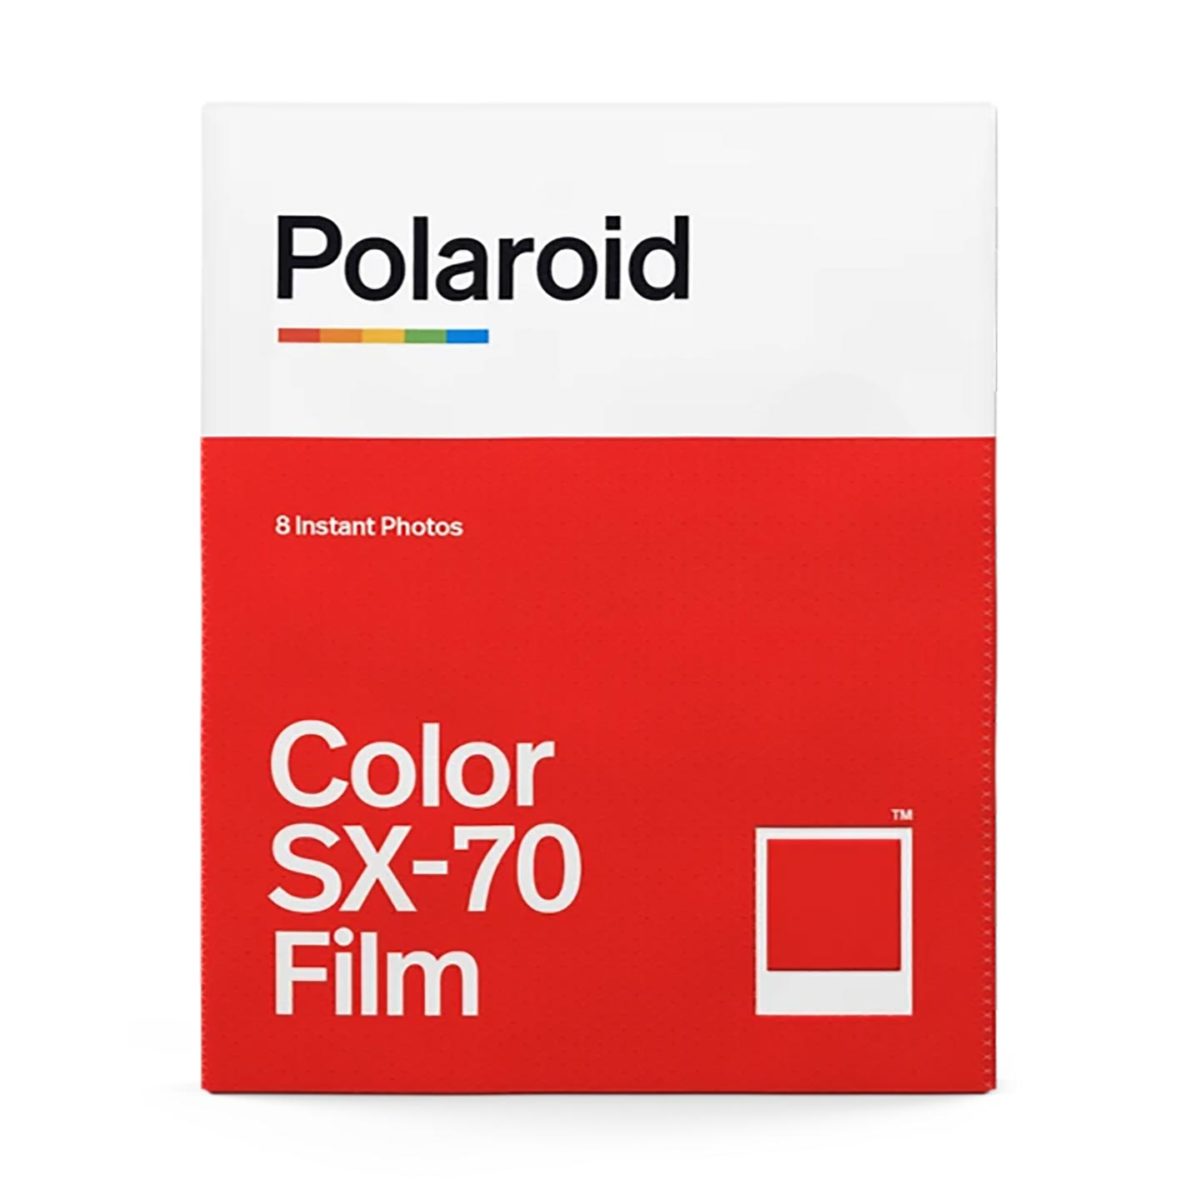 polaroid_sx70_color_film_02